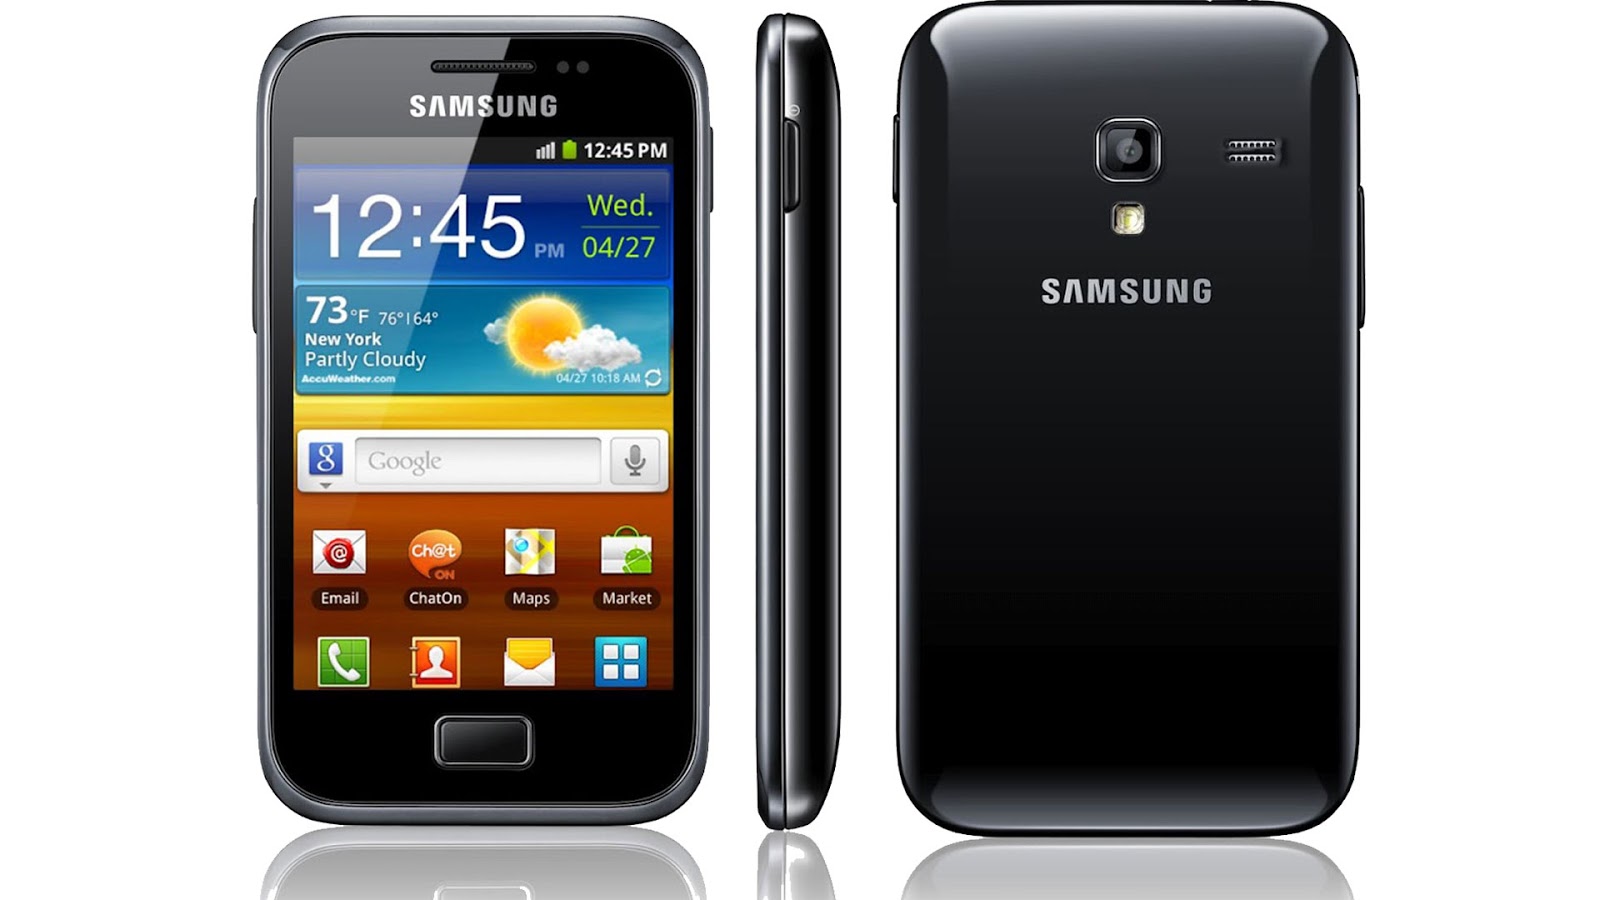 Samsung Galaxy Mini 2, Duos, Star ed Ace 2: le offerte e gli sconti di Amazon (Luglio 2014)